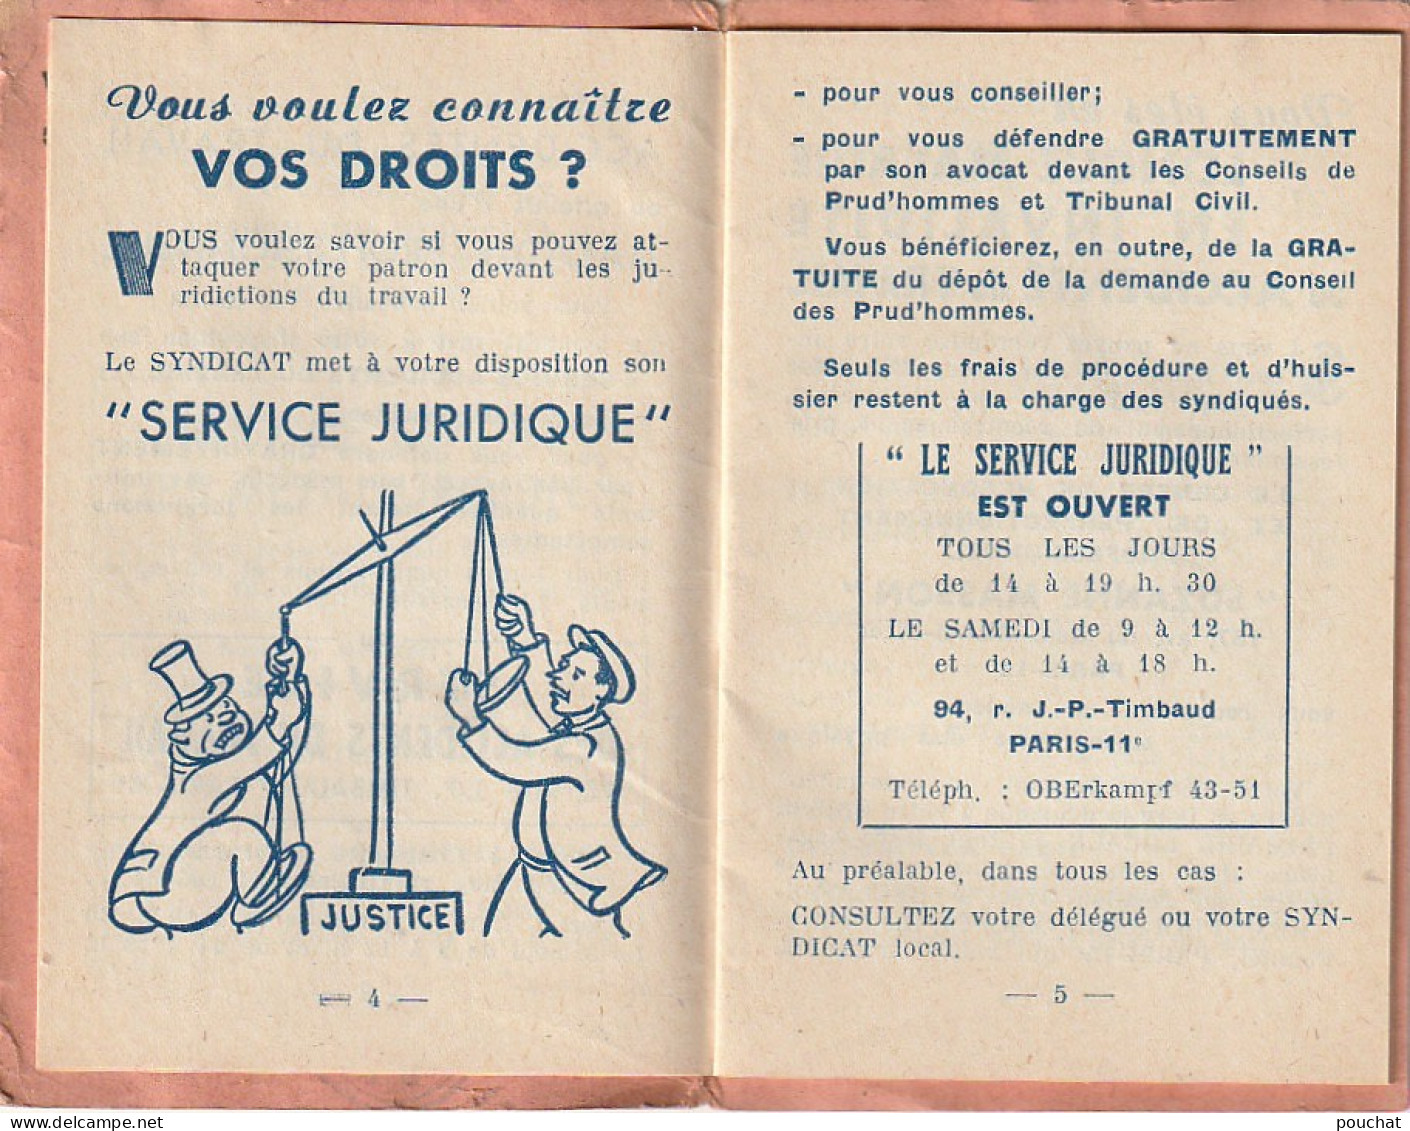 ZY 113- CARTE FEDERATION DES TRAVAILLEURS DE LA METALLURGIE C. G. T. (1956) PANTIN - CARTE 3 VOLETS , LIVRET COMPLET - Membership Cards